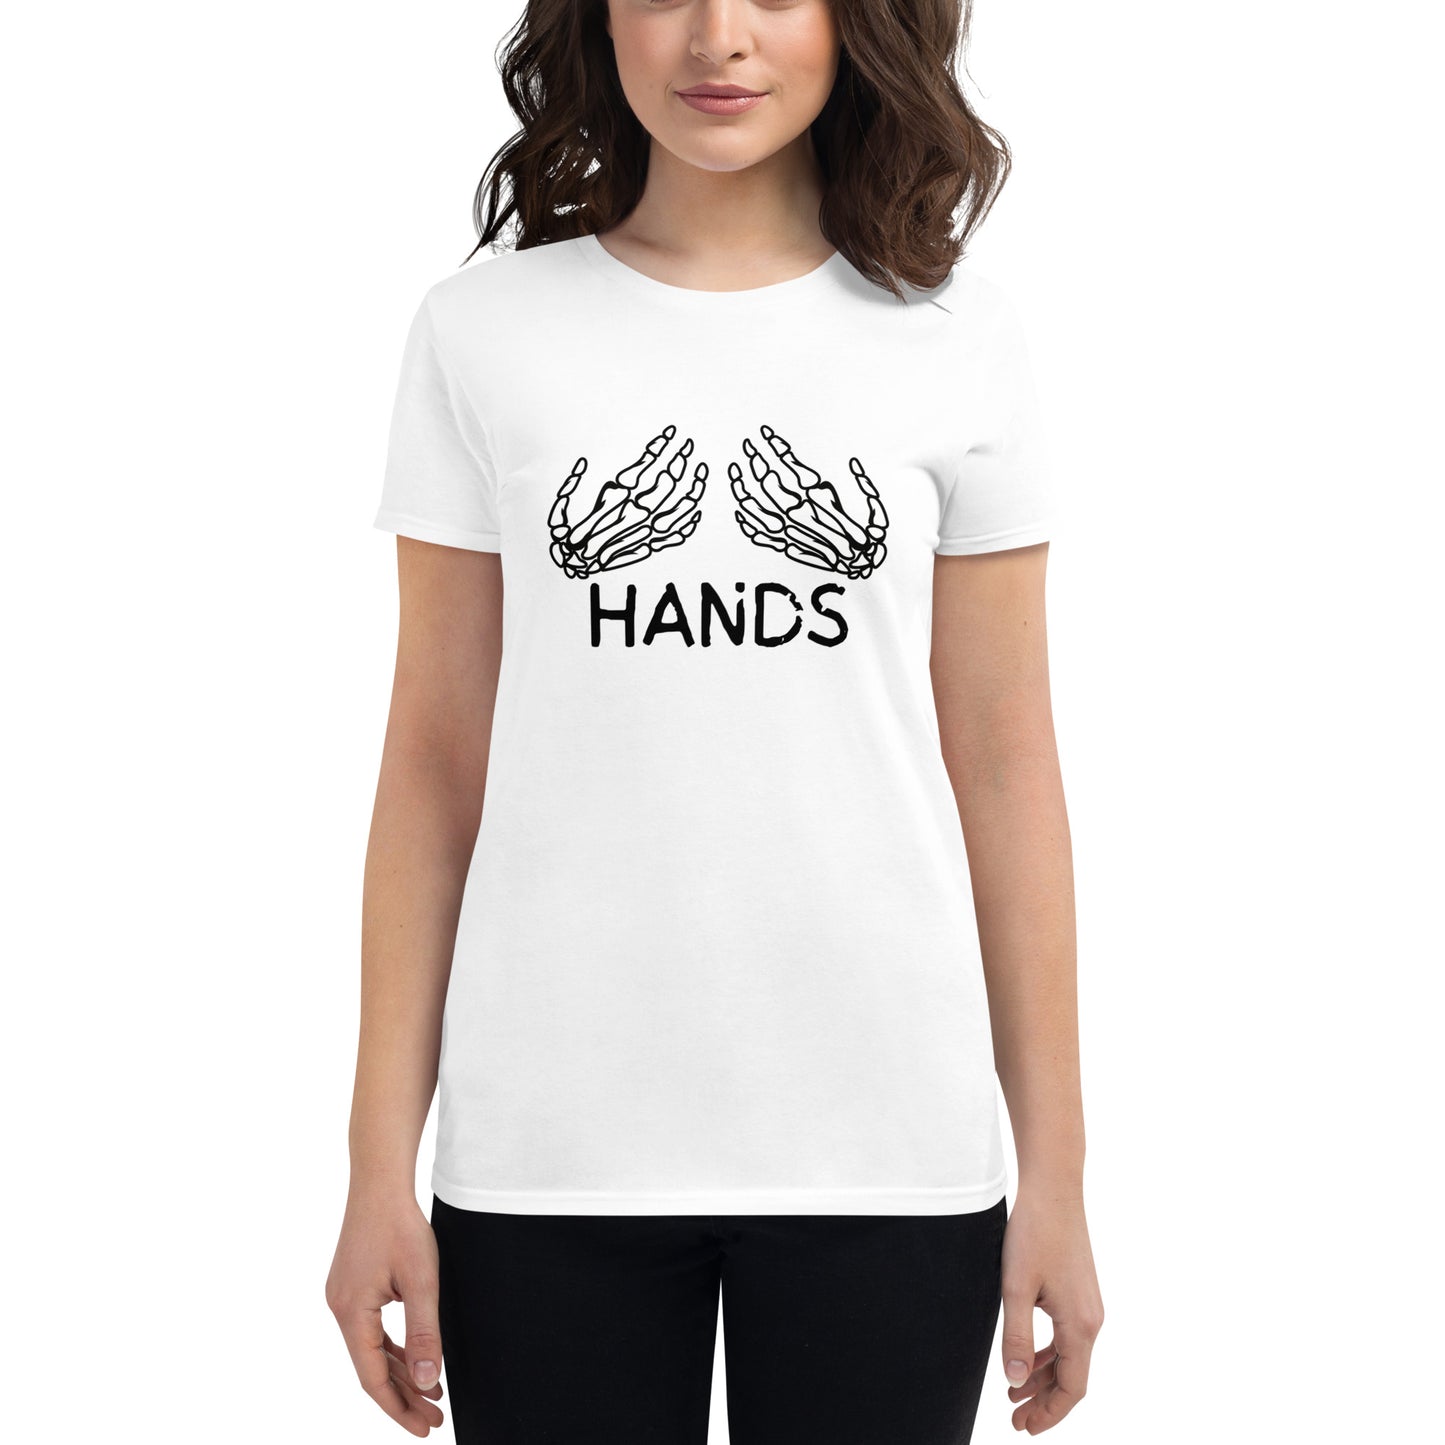 HANDS Women's short sleeve t-shirt